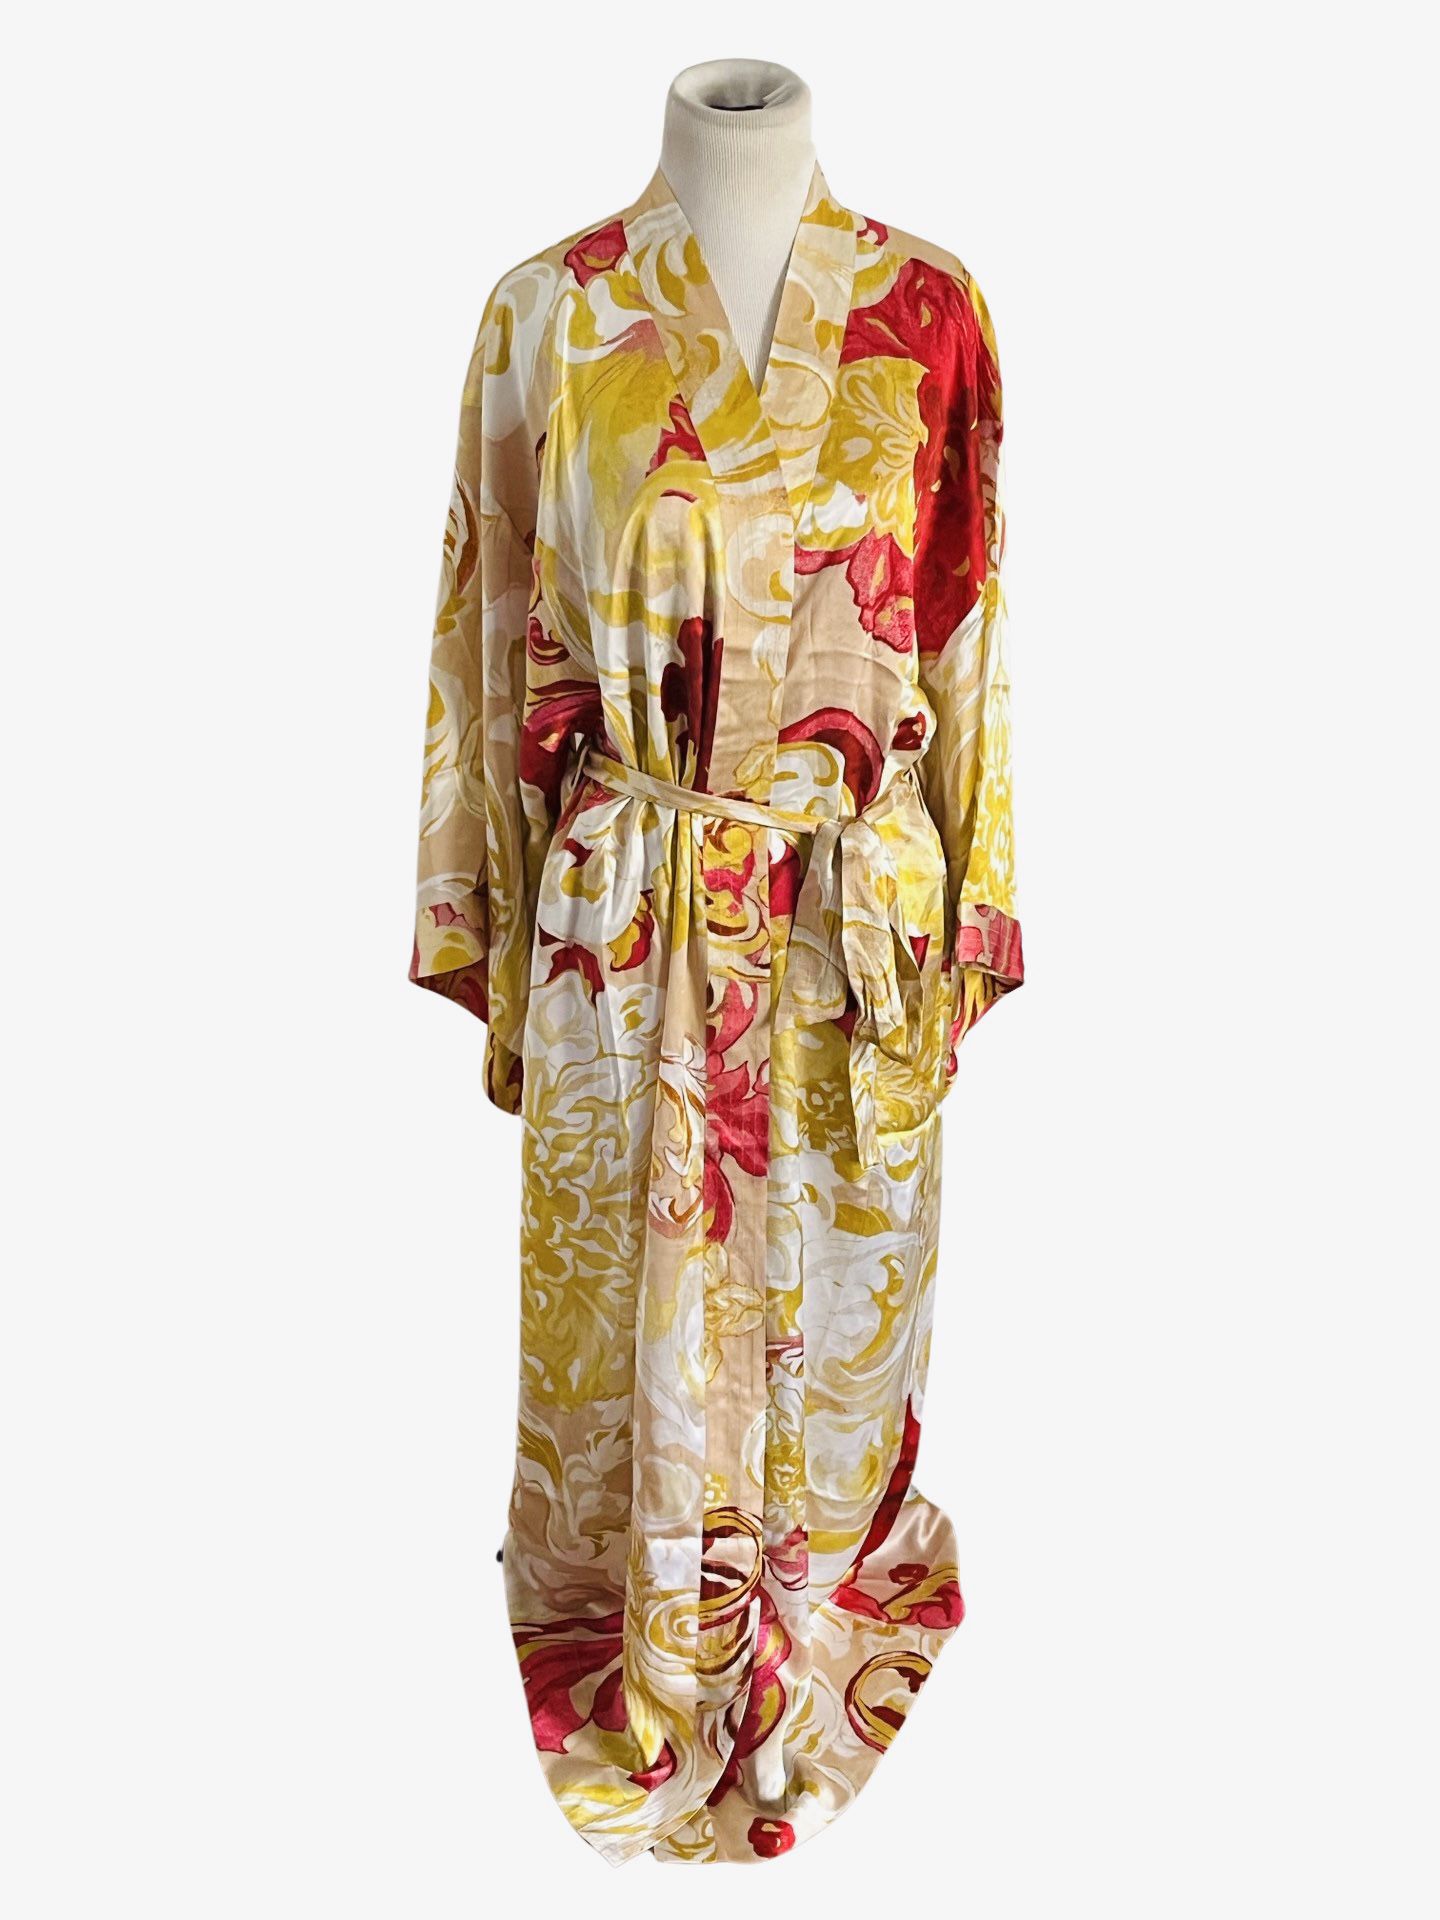 Silk Kimono Robe Soma Sensual NWT Floral Print Women’s S M  lingerie night gown